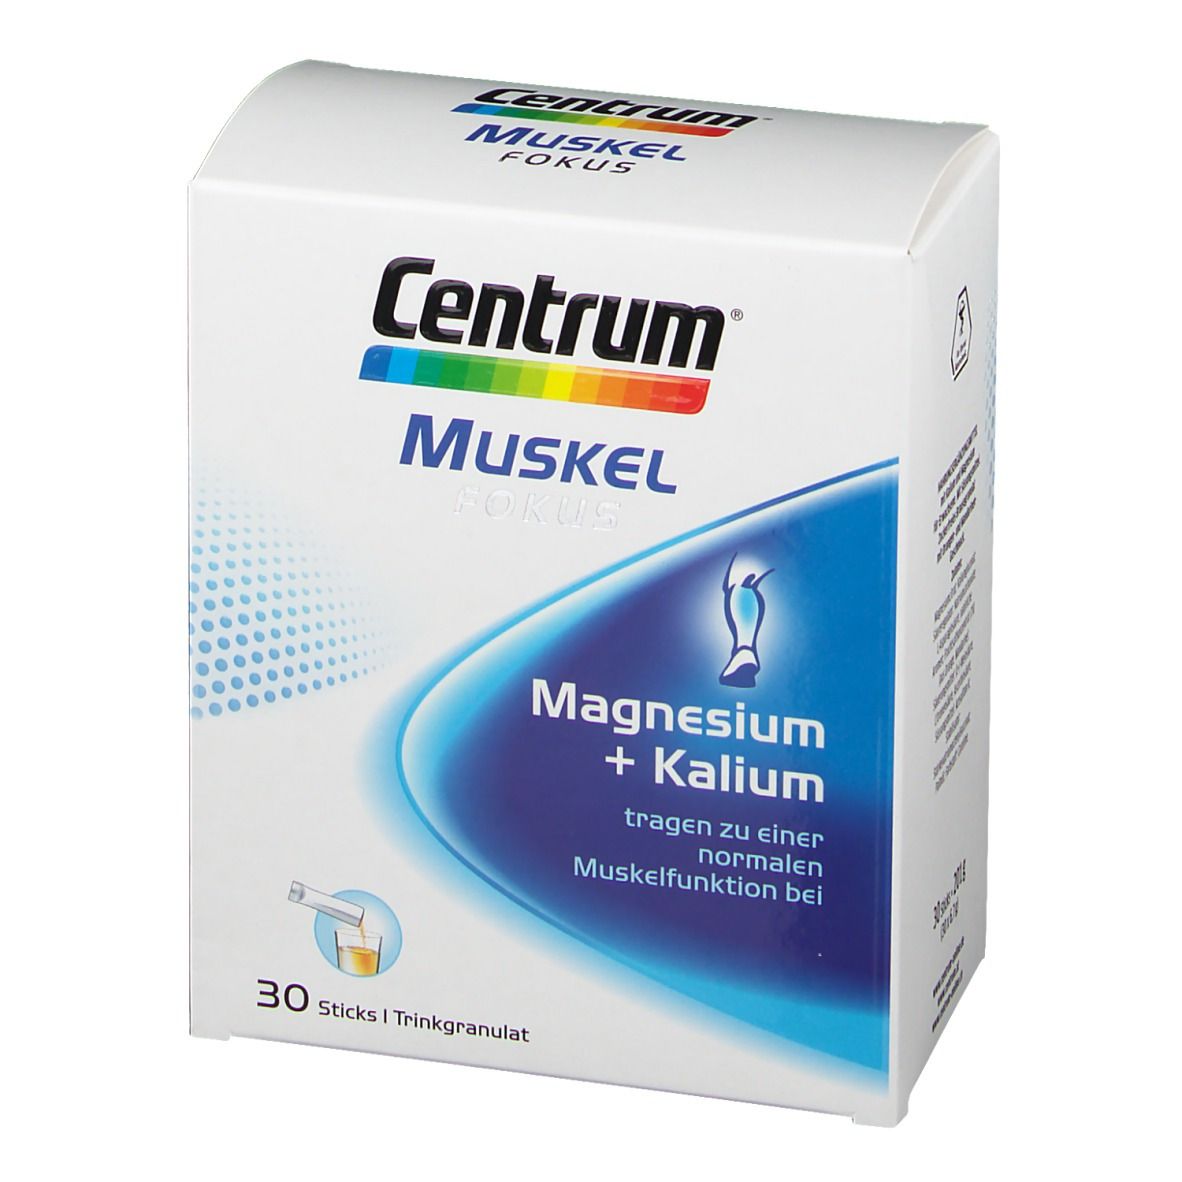 Centrum Muskel Fokus Magnesium + Kalium